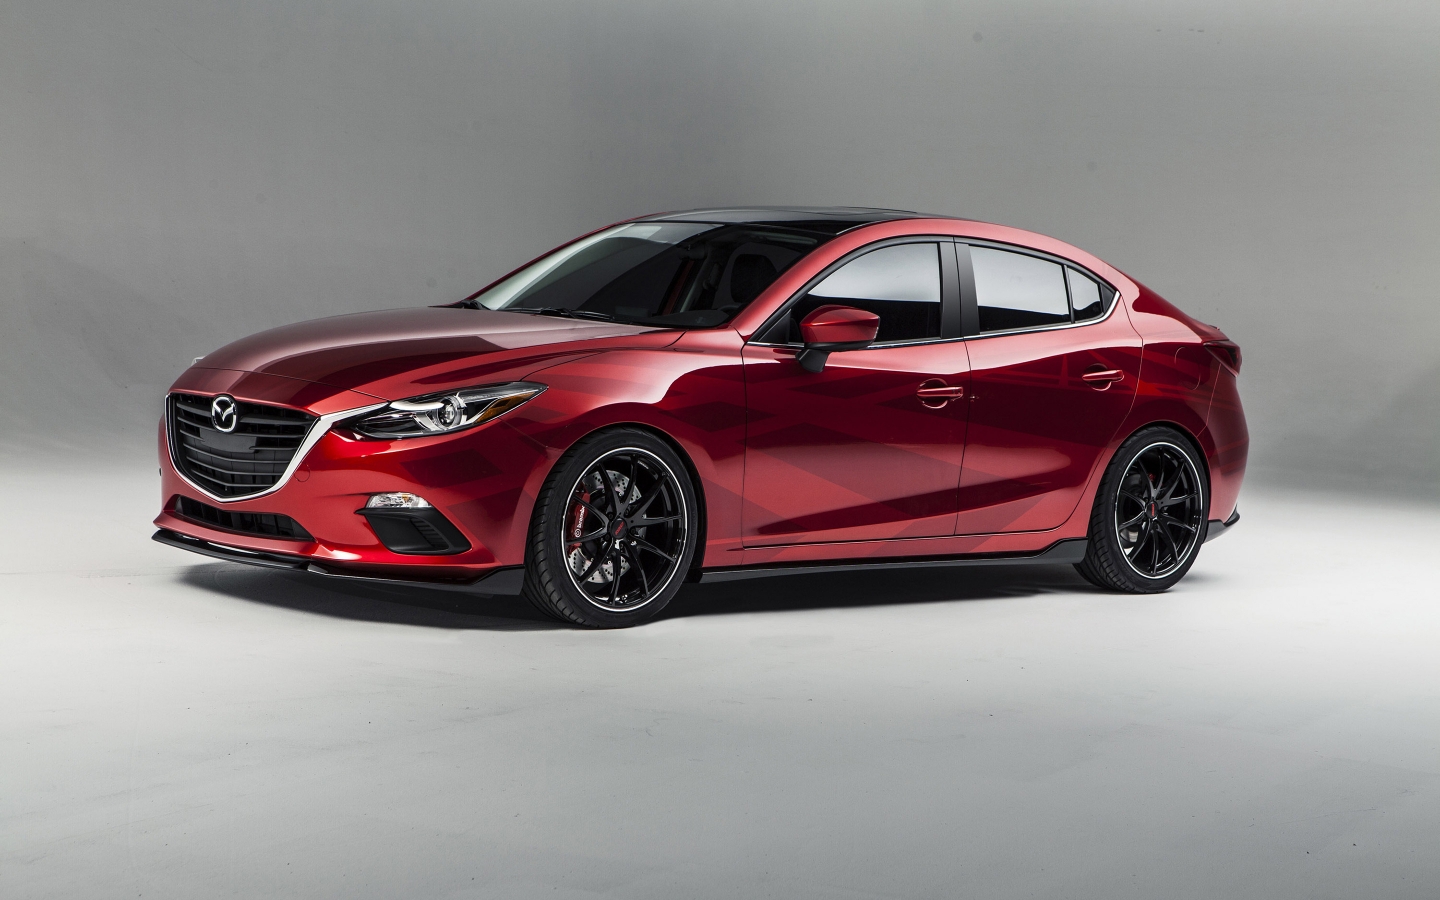 2013 Mazda Sema Concept for 1440 x 900 widescreen resolution